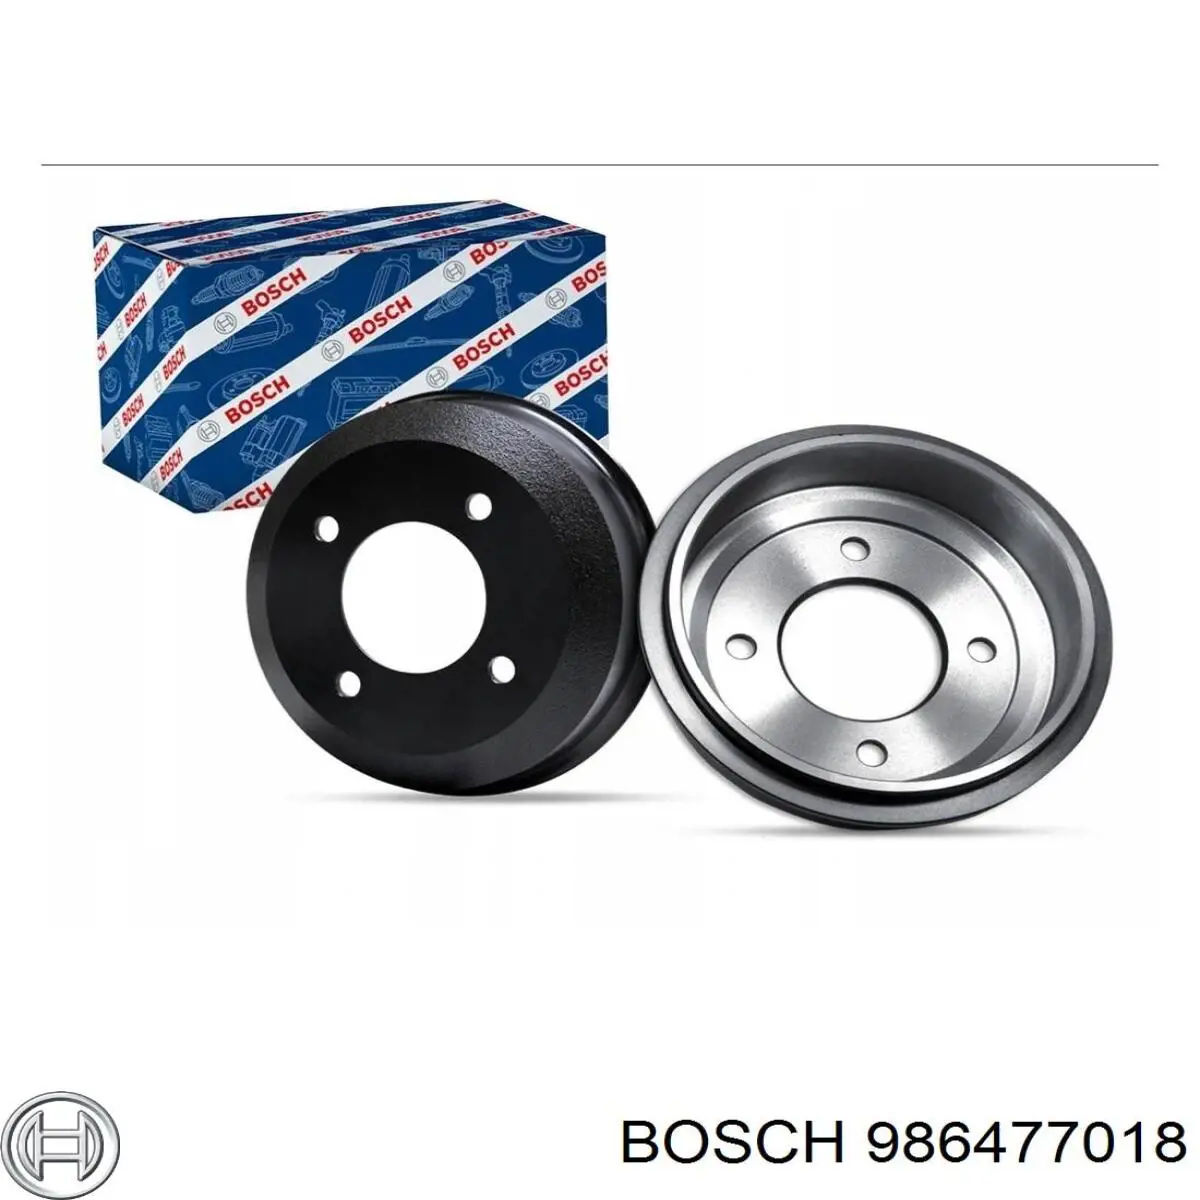 986477018 Bosch tambor do freio traseiro